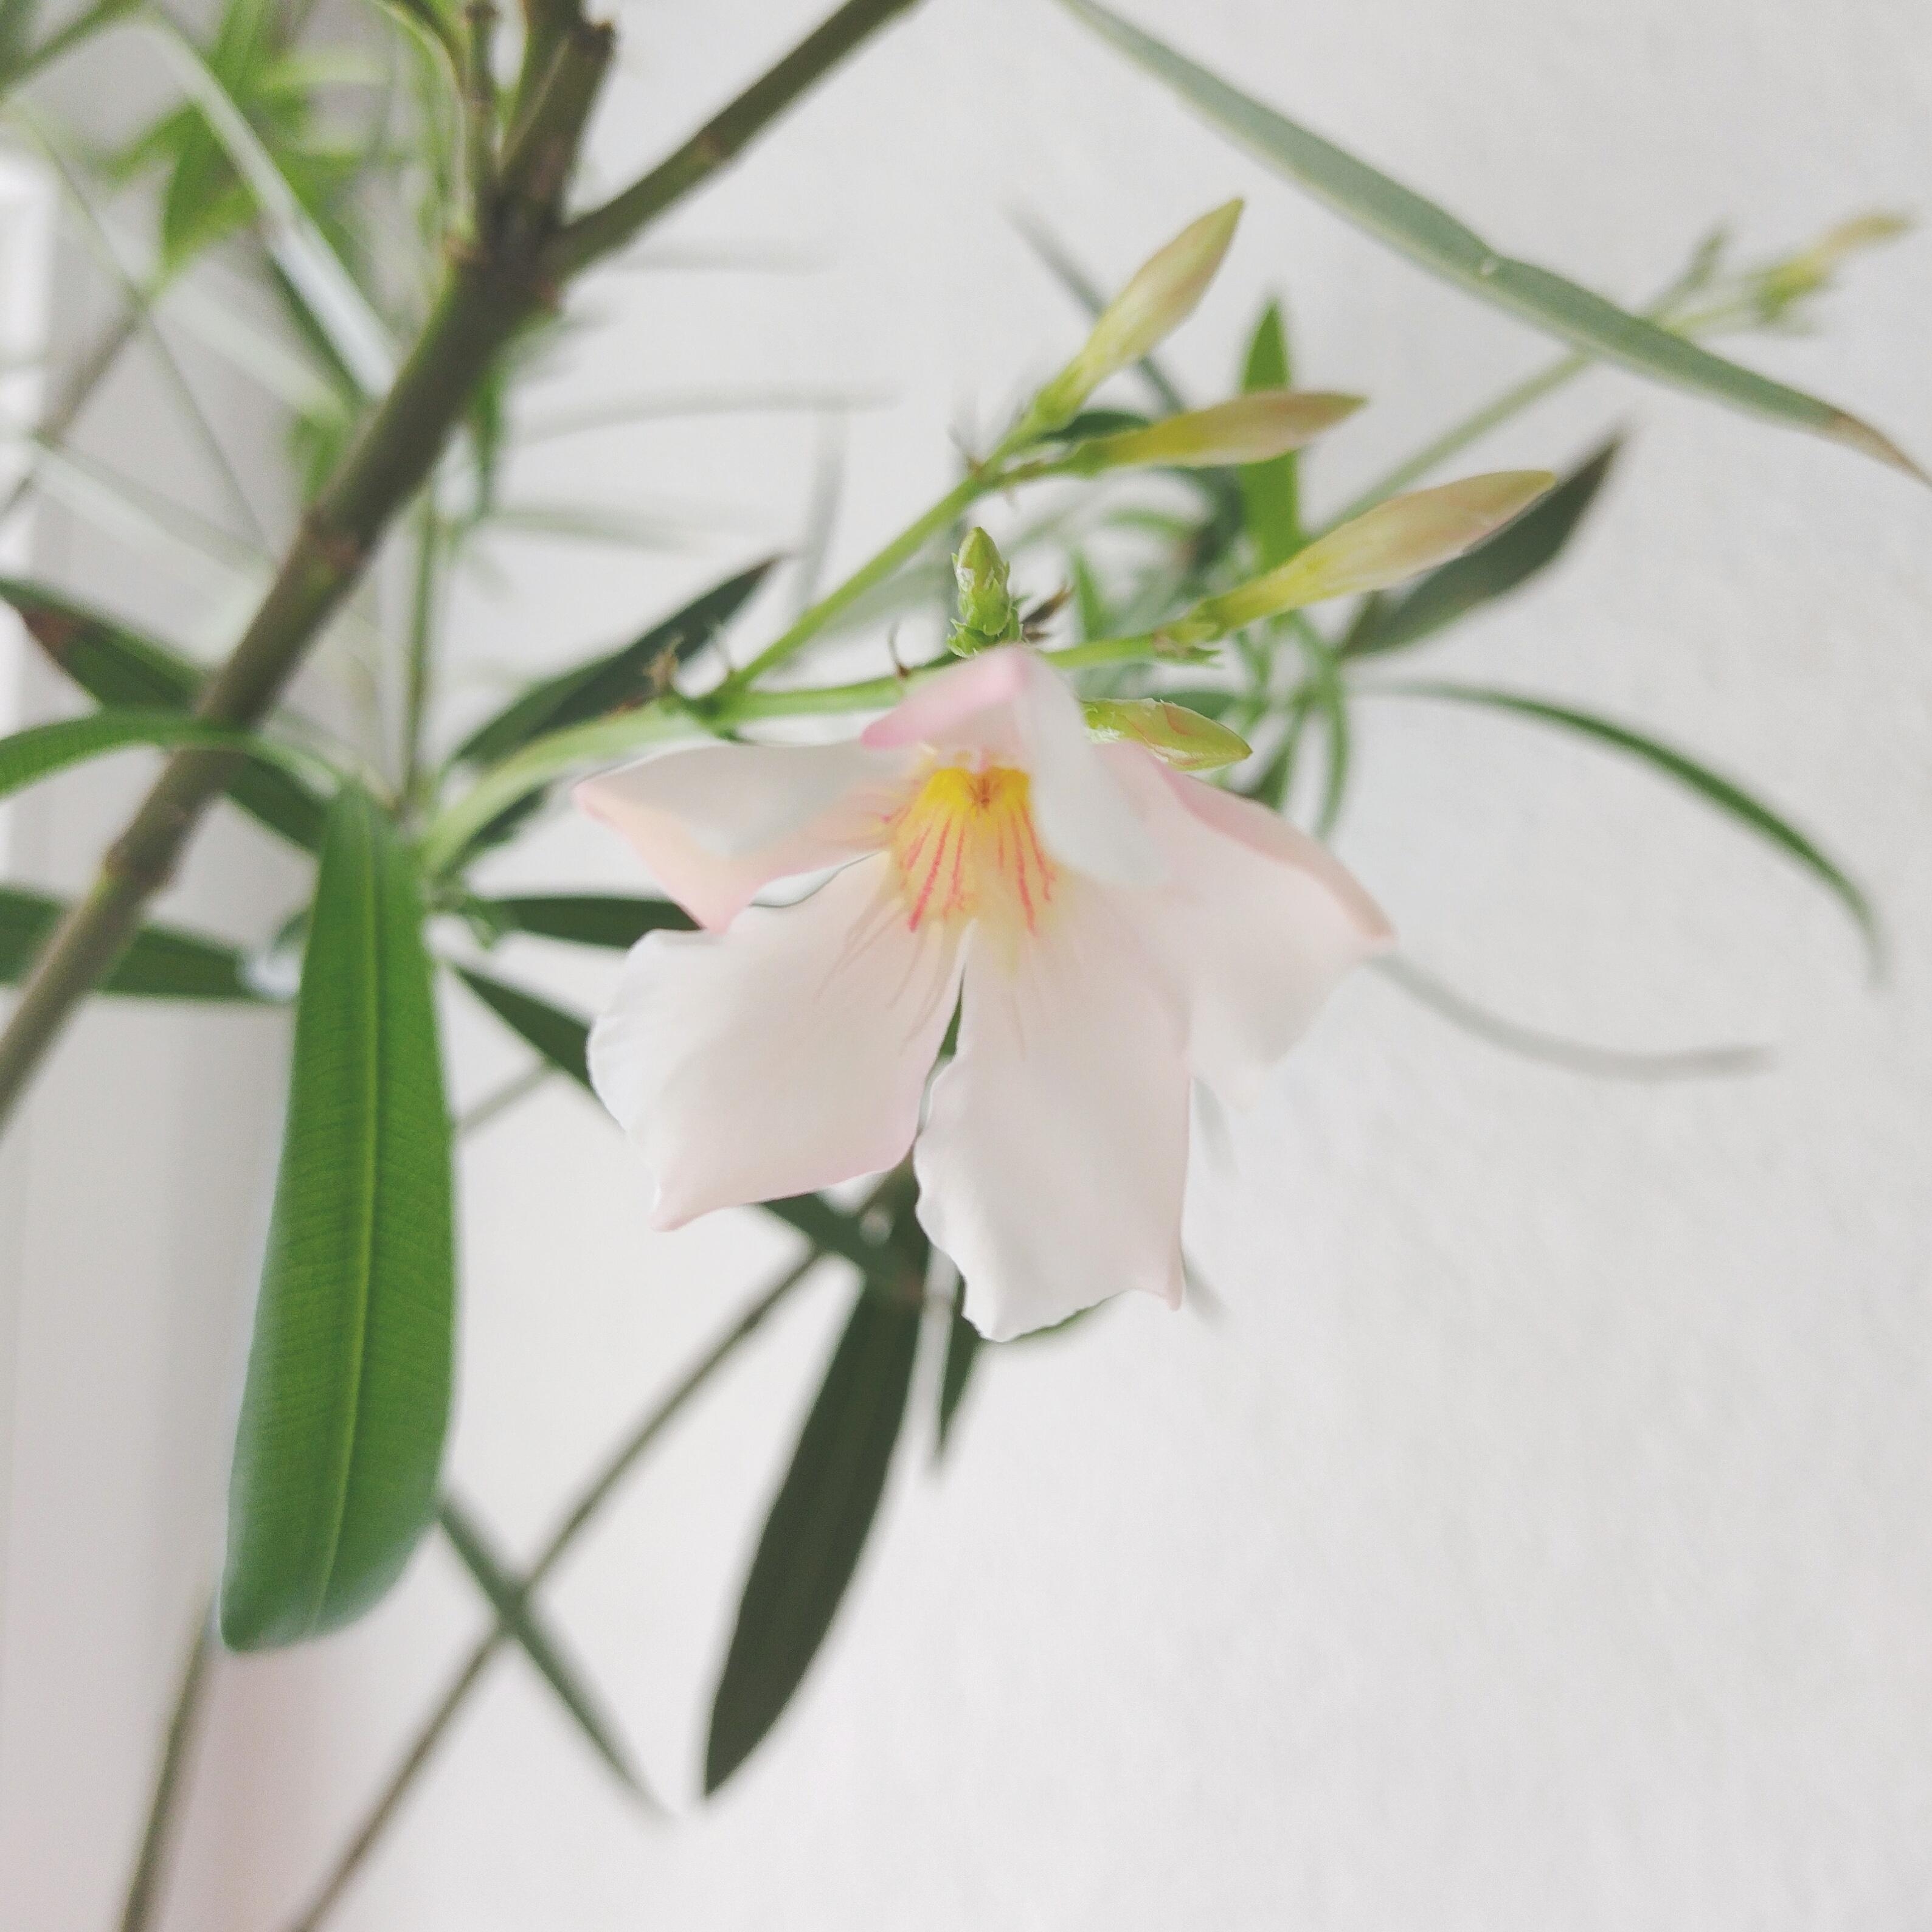 🌸
#oleander #baum #blüte